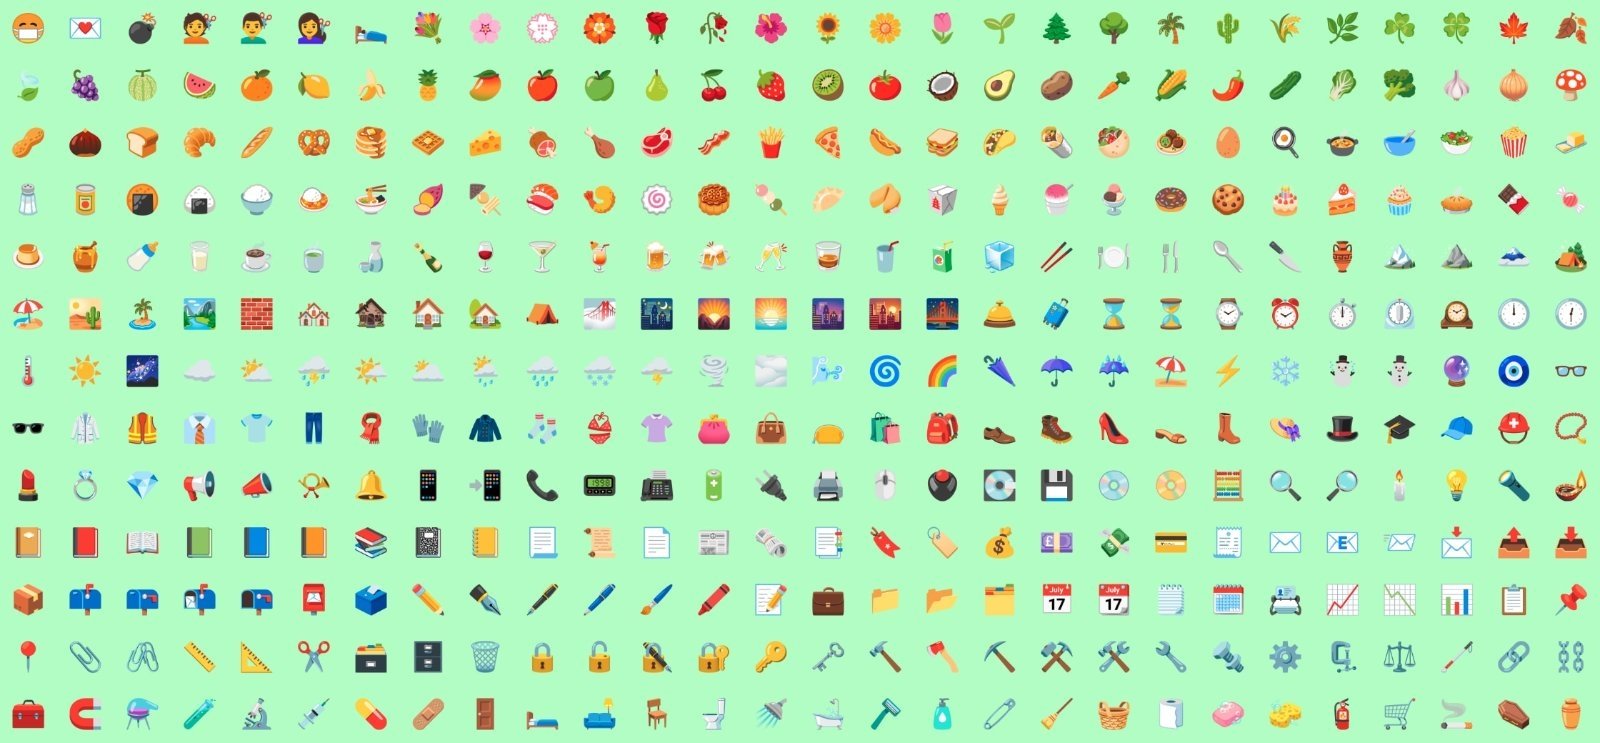 Nuevos emojis de Android 12